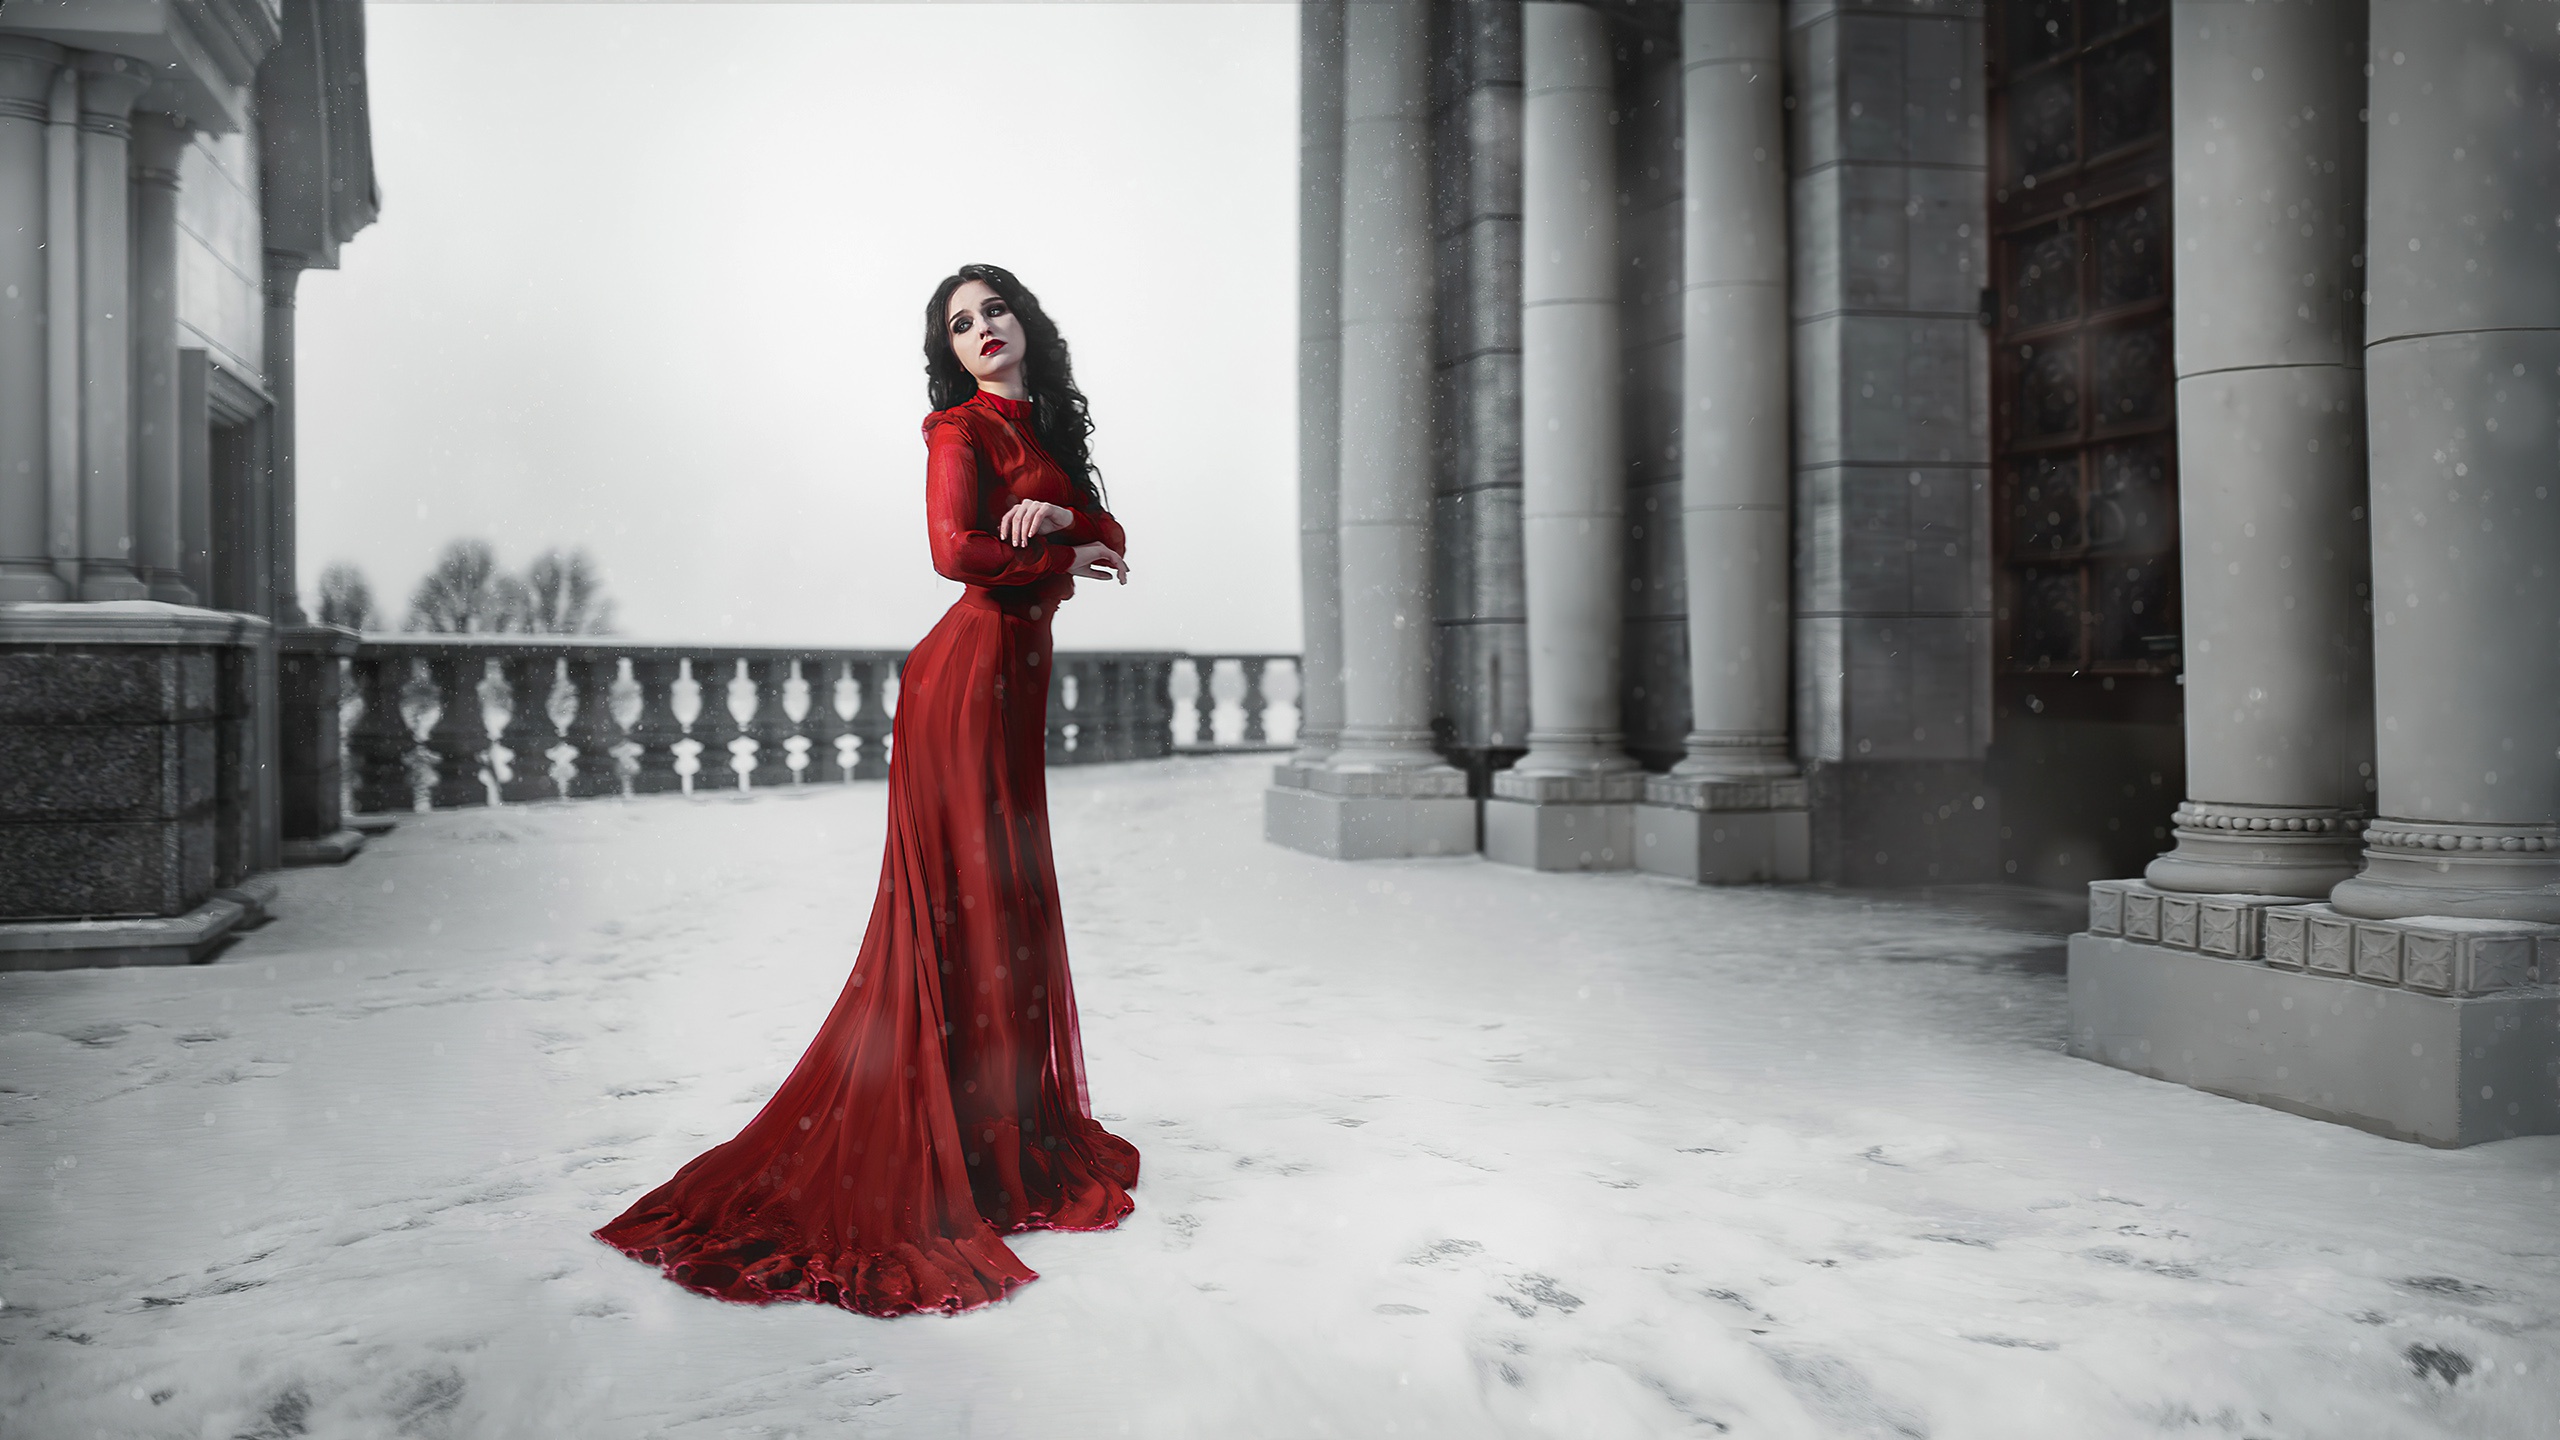 Красное платье с замком